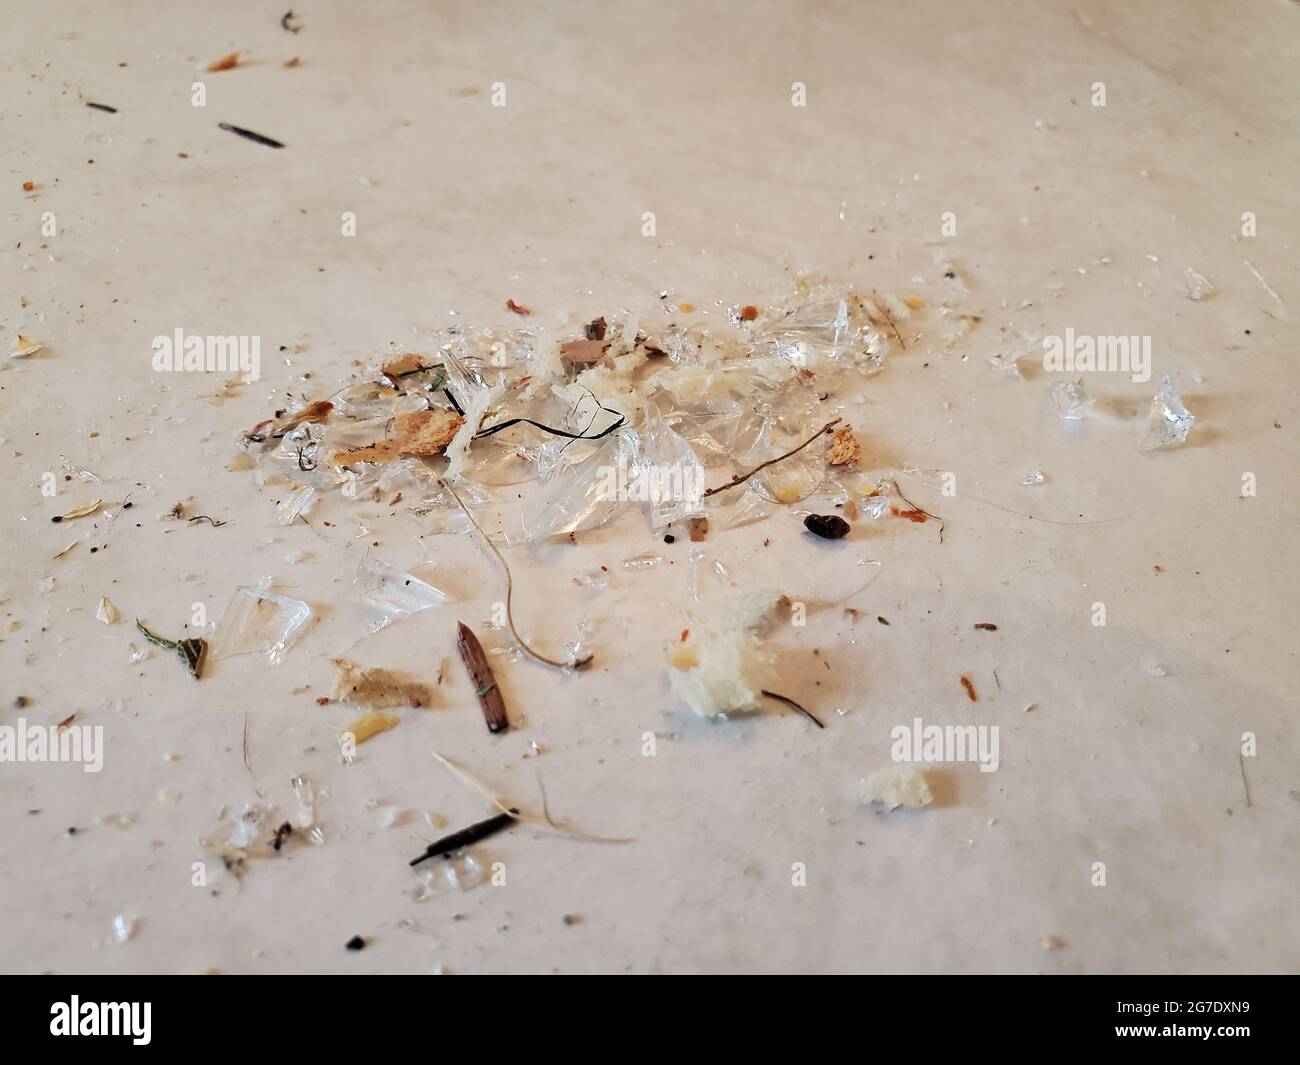 Gros plan de fragments de verre brisé sur le sol avec de la poussière, Lafayette, Californie, 14 juin 2021. () Banque D'Images